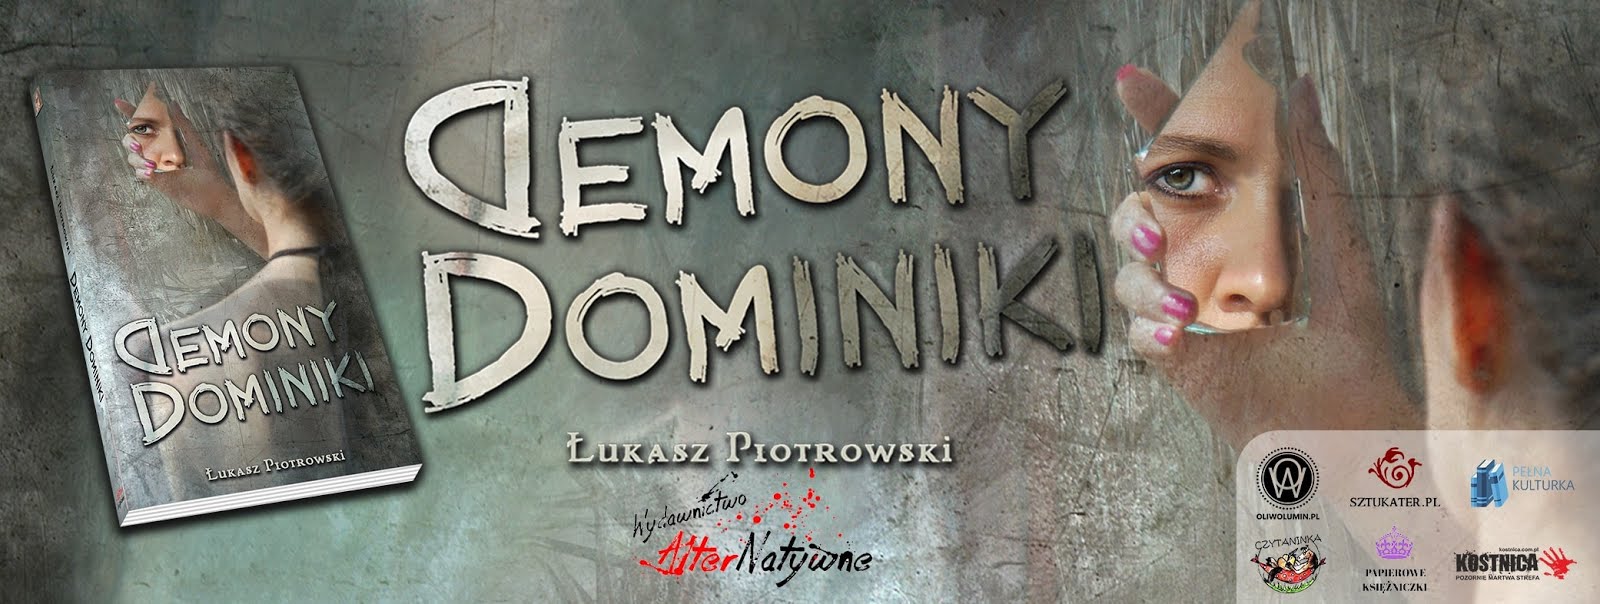 Demony Dominiki - Łukasz Piotrowski - oficjalna strona książki